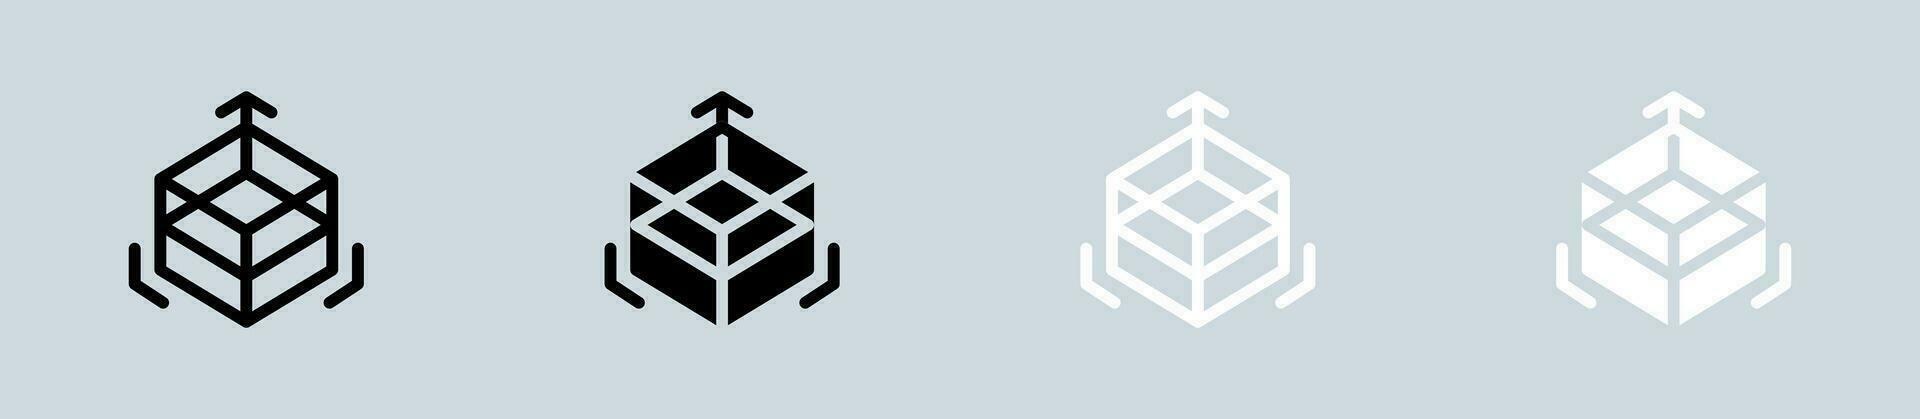 drie dimensionaal icoon reeks in zwart en wit. 3d tekens vector illustratie.